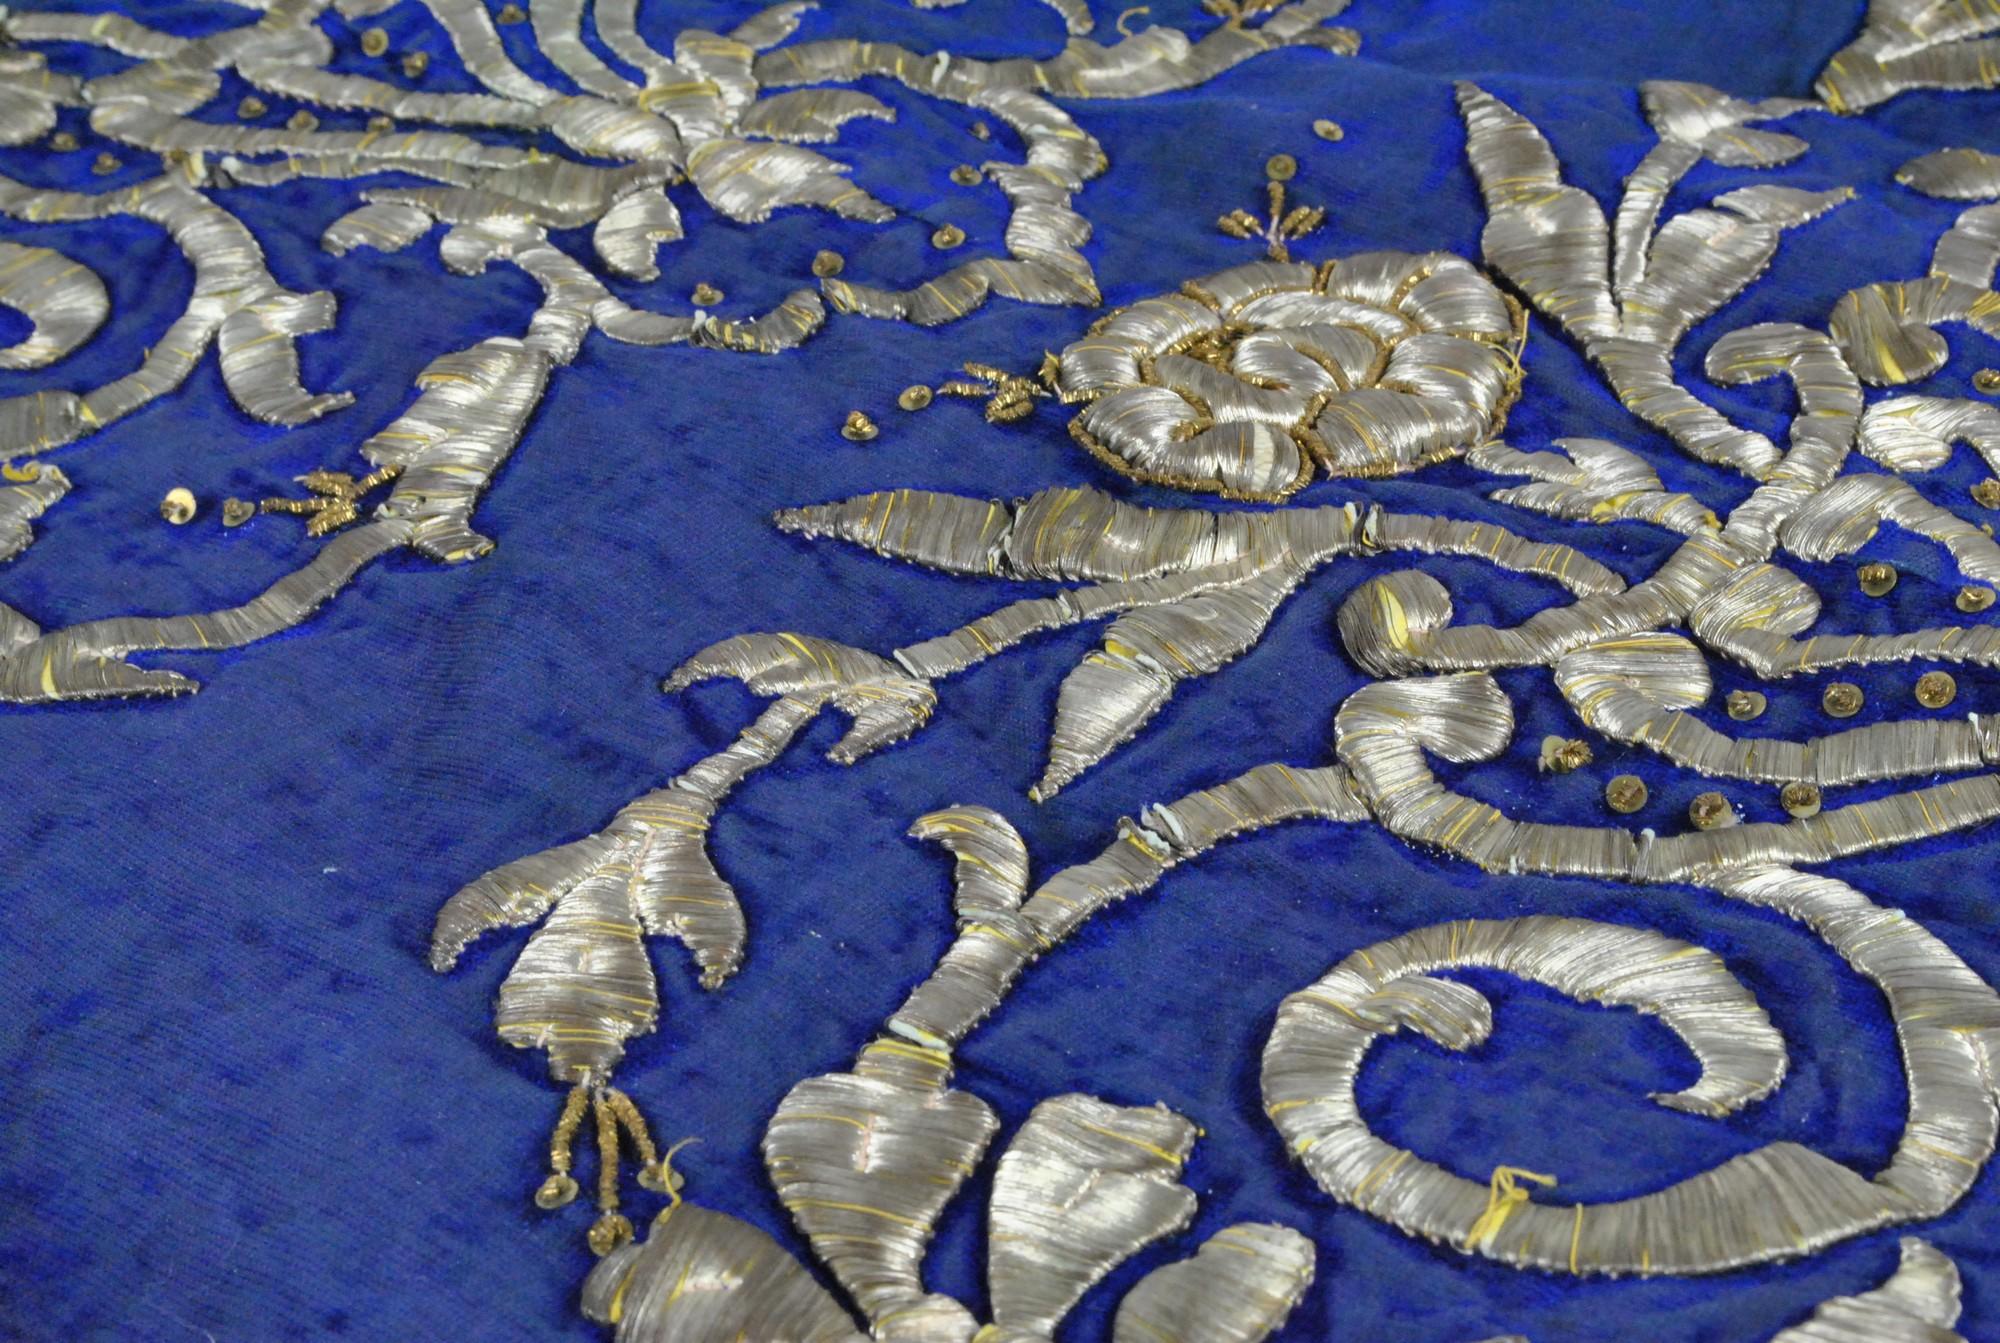 Magnifique caftan oriental en tissu bleu entièrement brodé de fleurs et d'arabesques en fil d'argent

Bon état malgré quelques traces d'usure

19ème siècle

Hauteur d'environ 137 cm